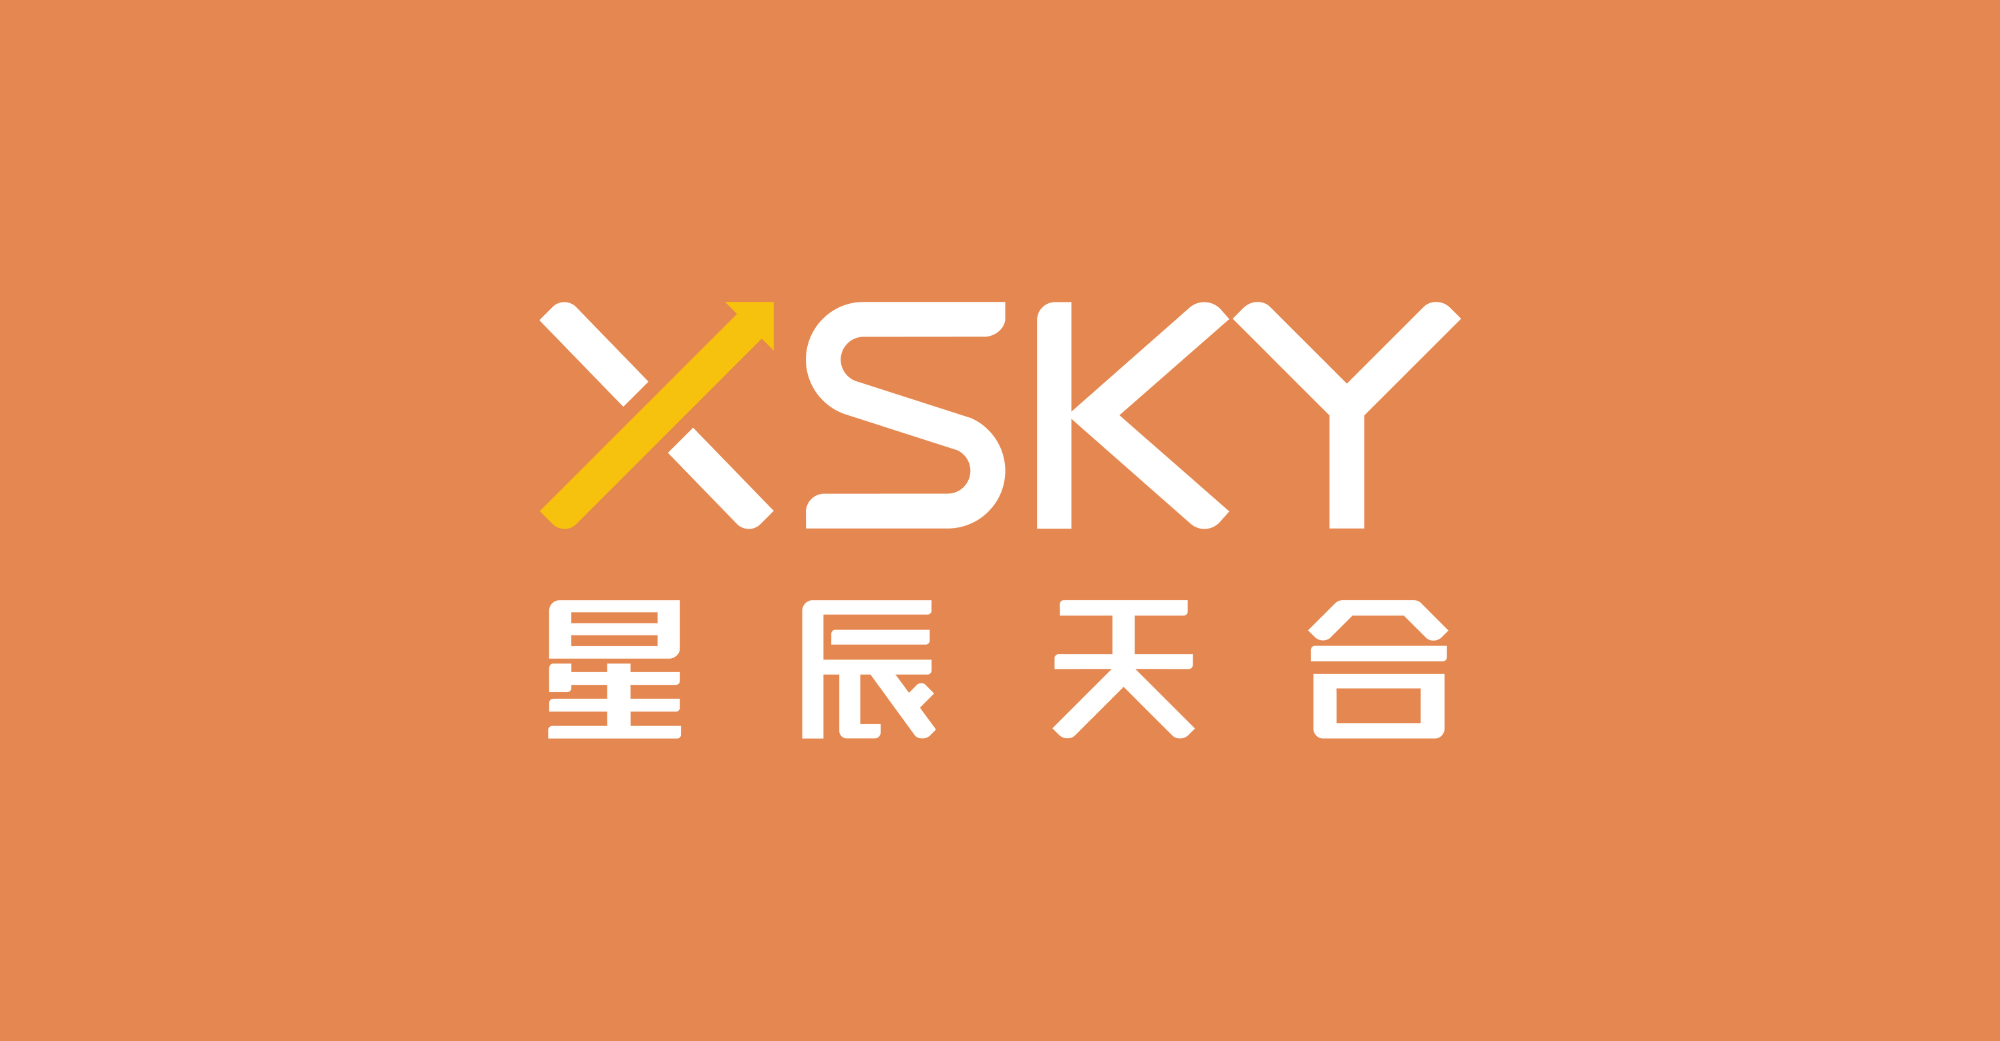 XSky $62.8 मिलियन एफ राउन्ड फाइनान्सिंग, लगानी मा भाग लिन को लागी पूंजी को स्रोत